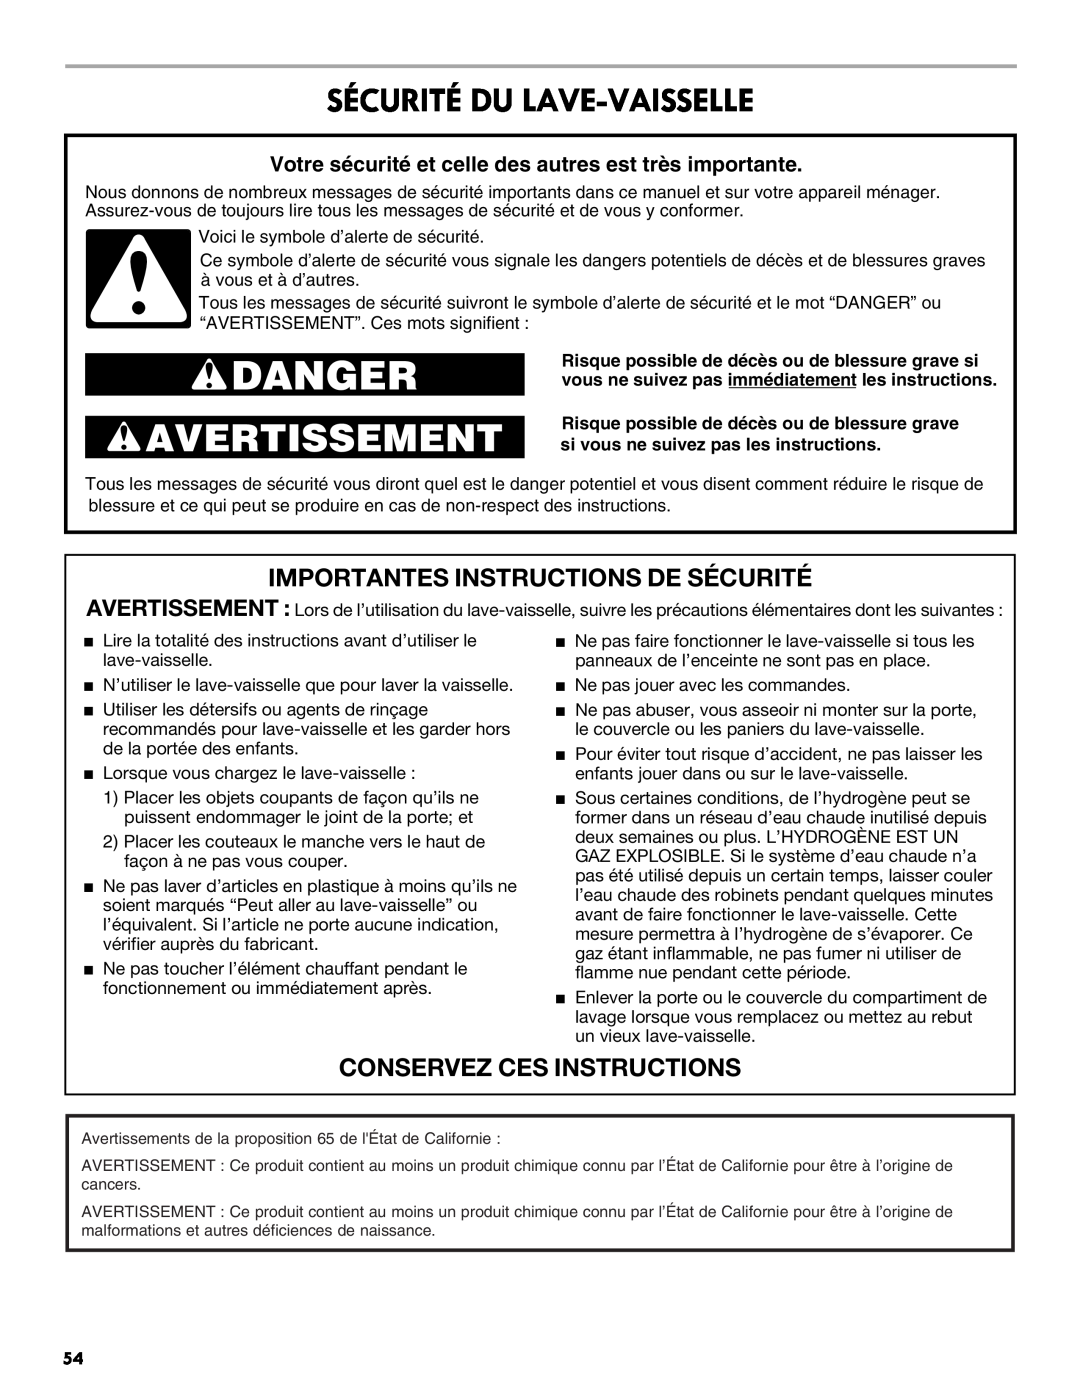 Kenmore 665.1327 manual Danger, Avertissement, Sécurité Du Lave-Vaisselle, Importantes Instructions De Sécurité 